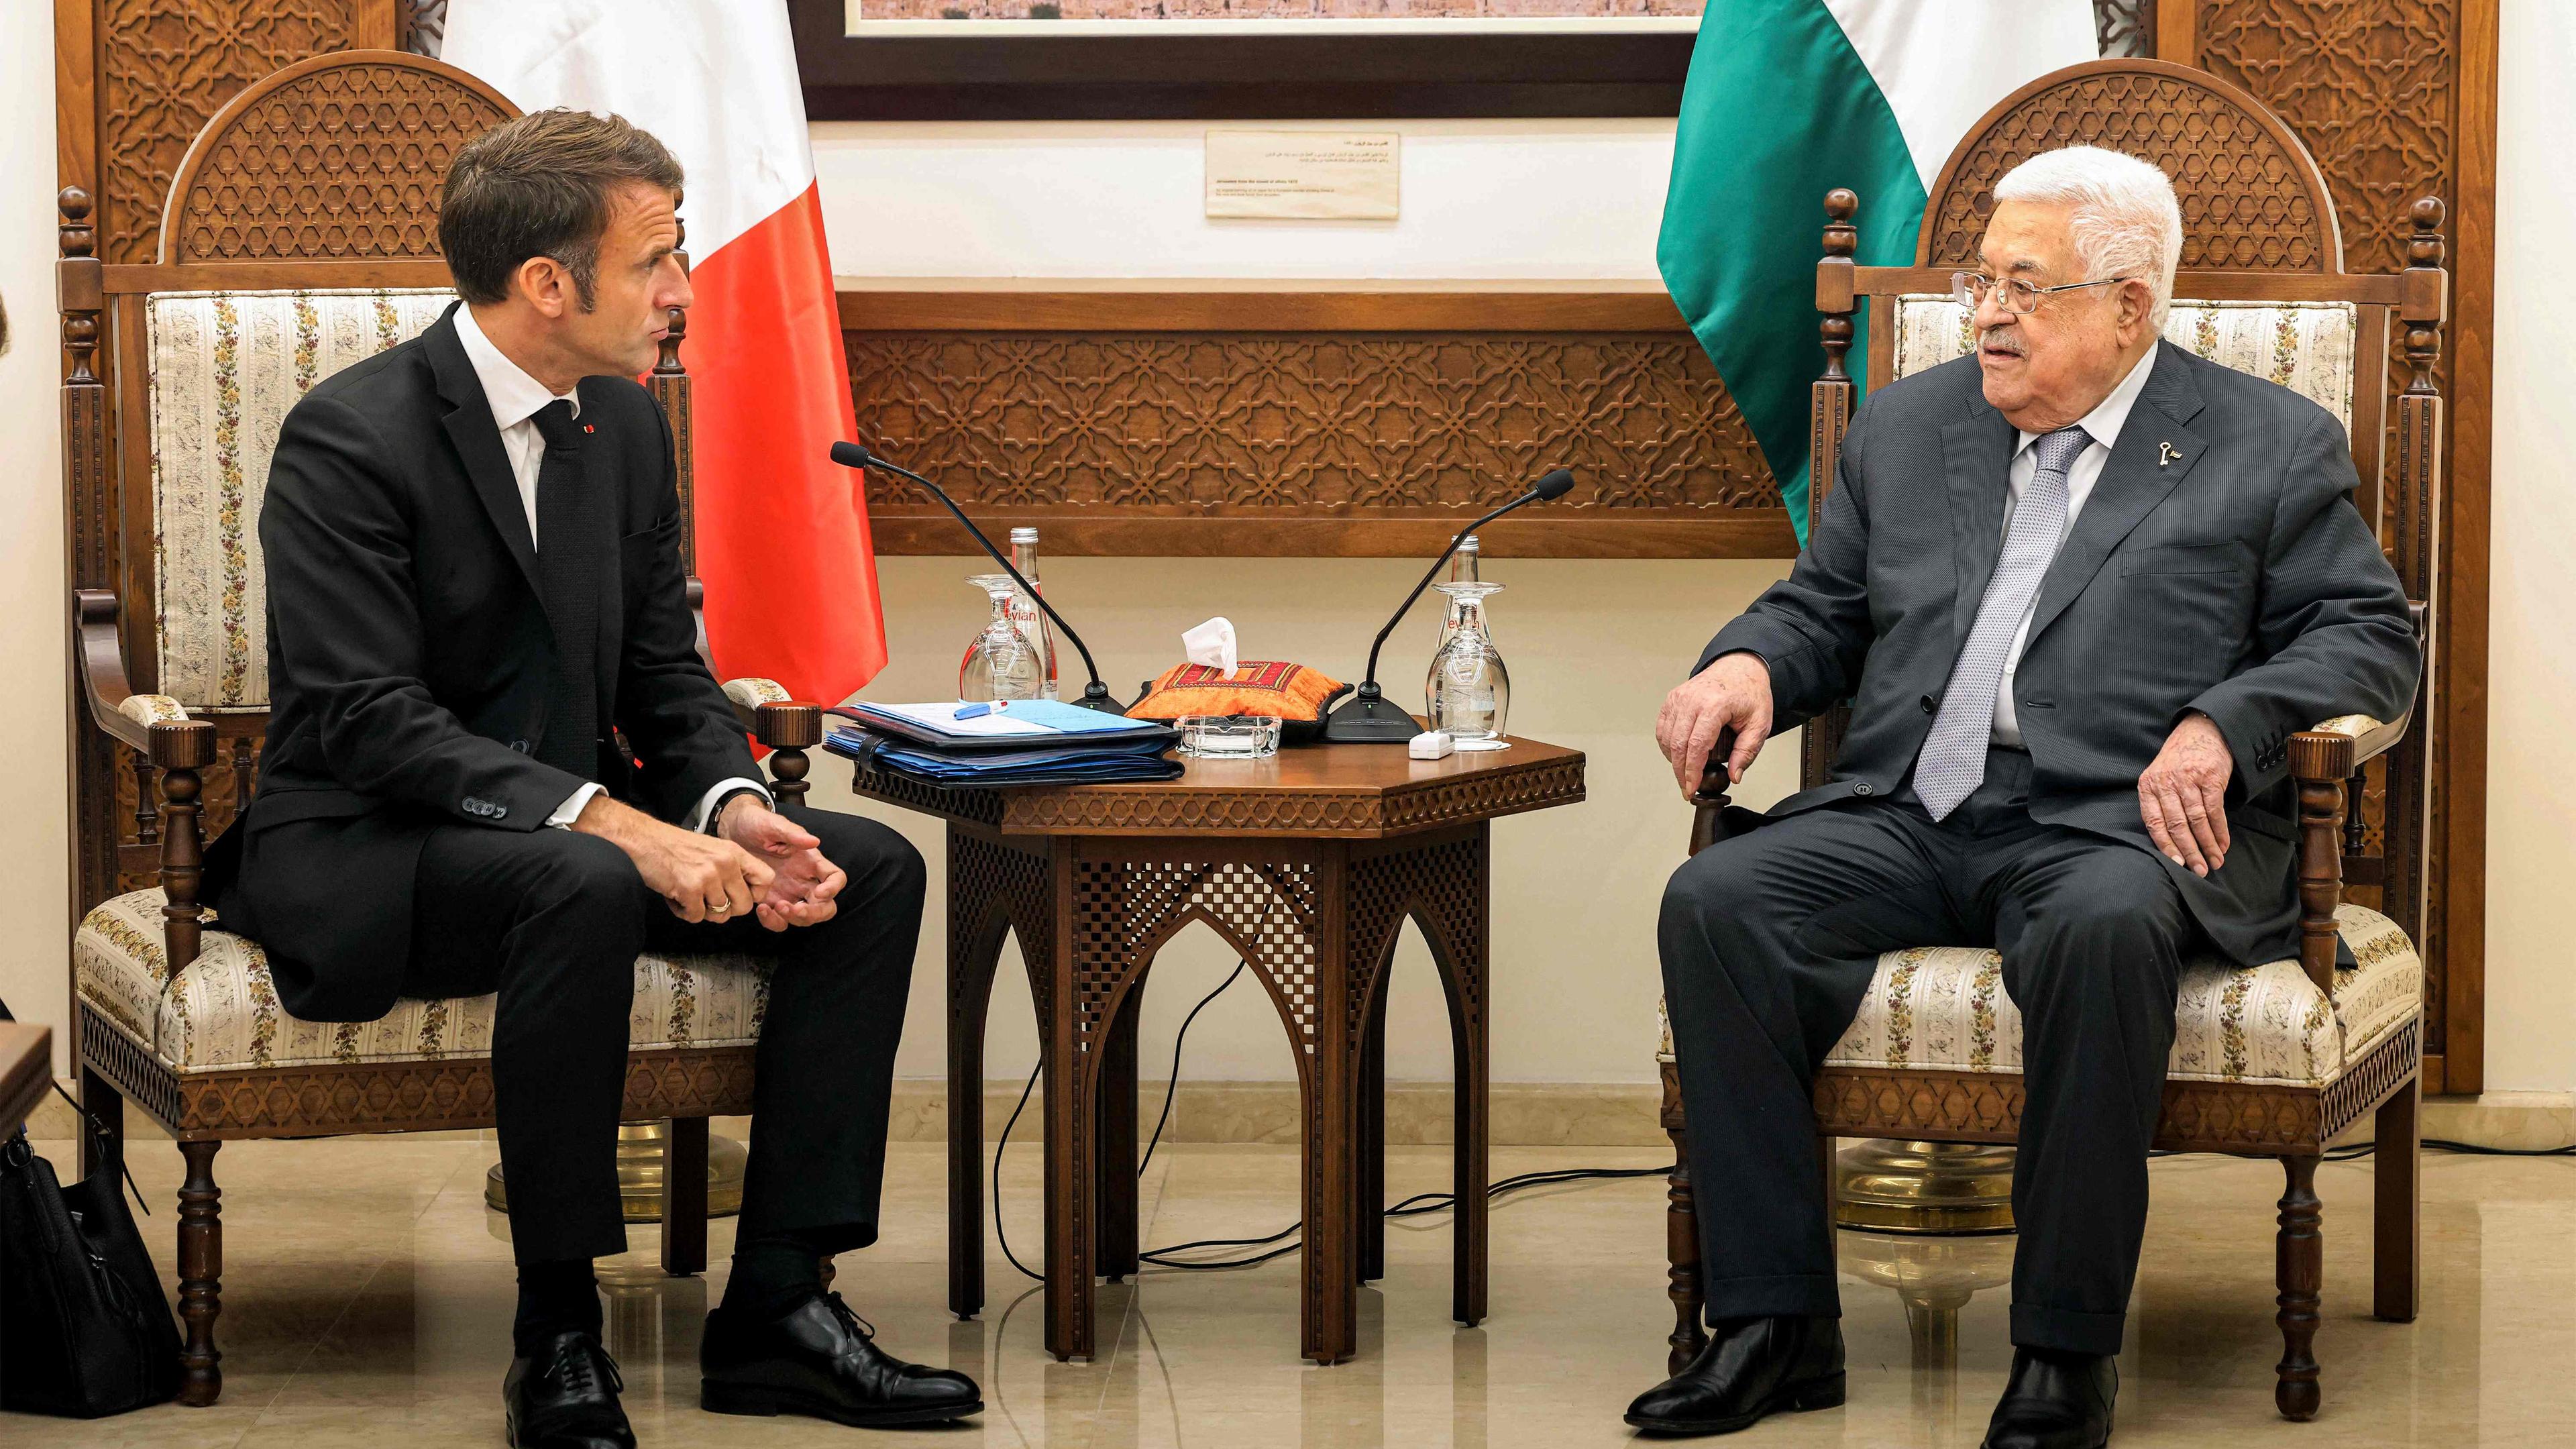 Der französische Präsident Emmanuel Macron trifft den palästinensischen Präsident Mahmud Abbas.